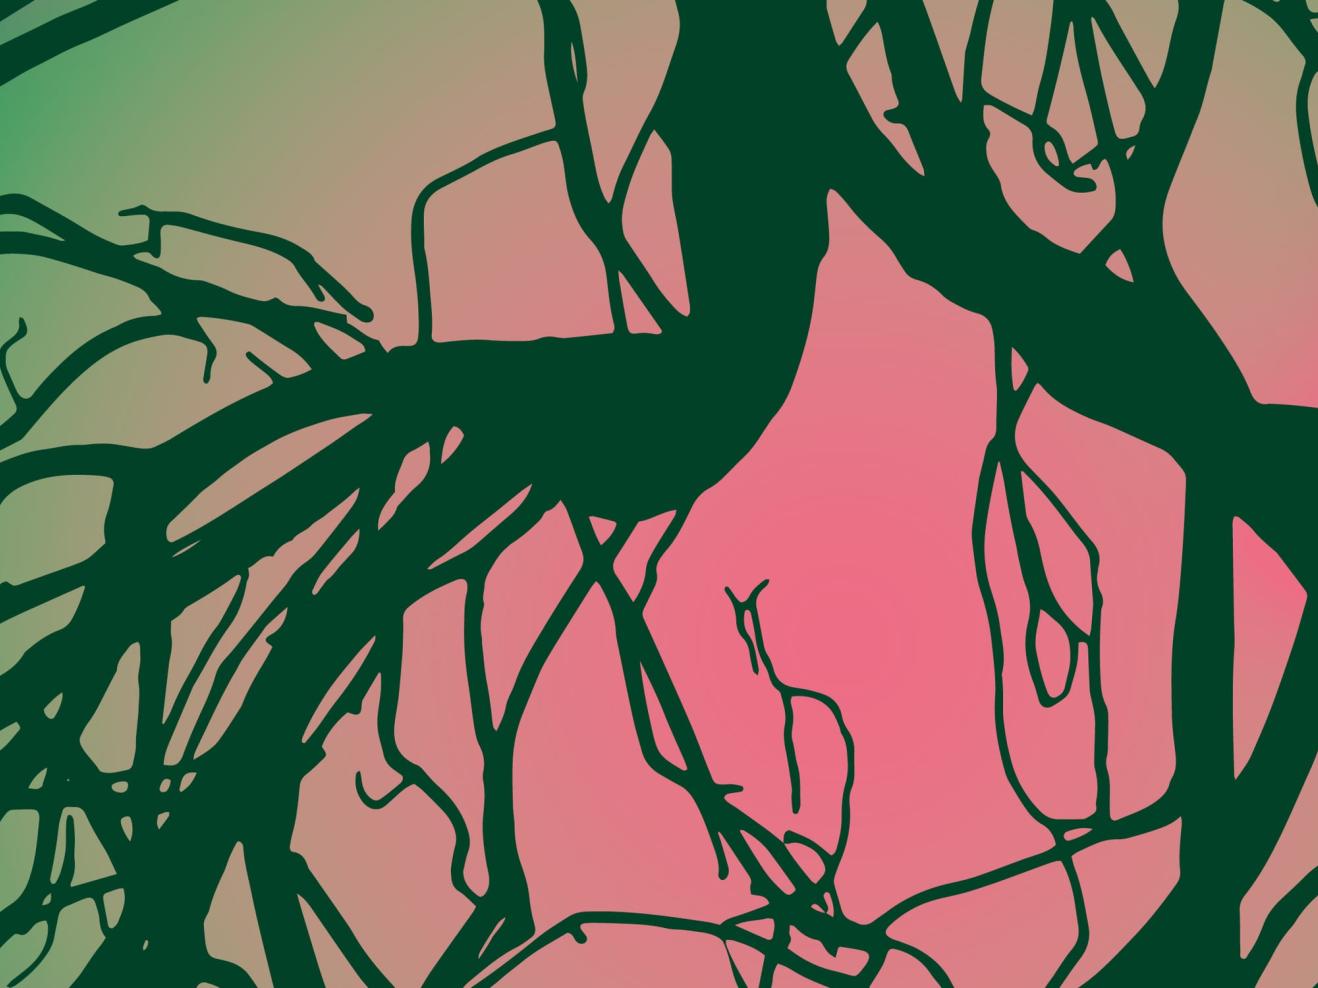 Cover mit graphischem Muster zur Ausstellung "Wälder".